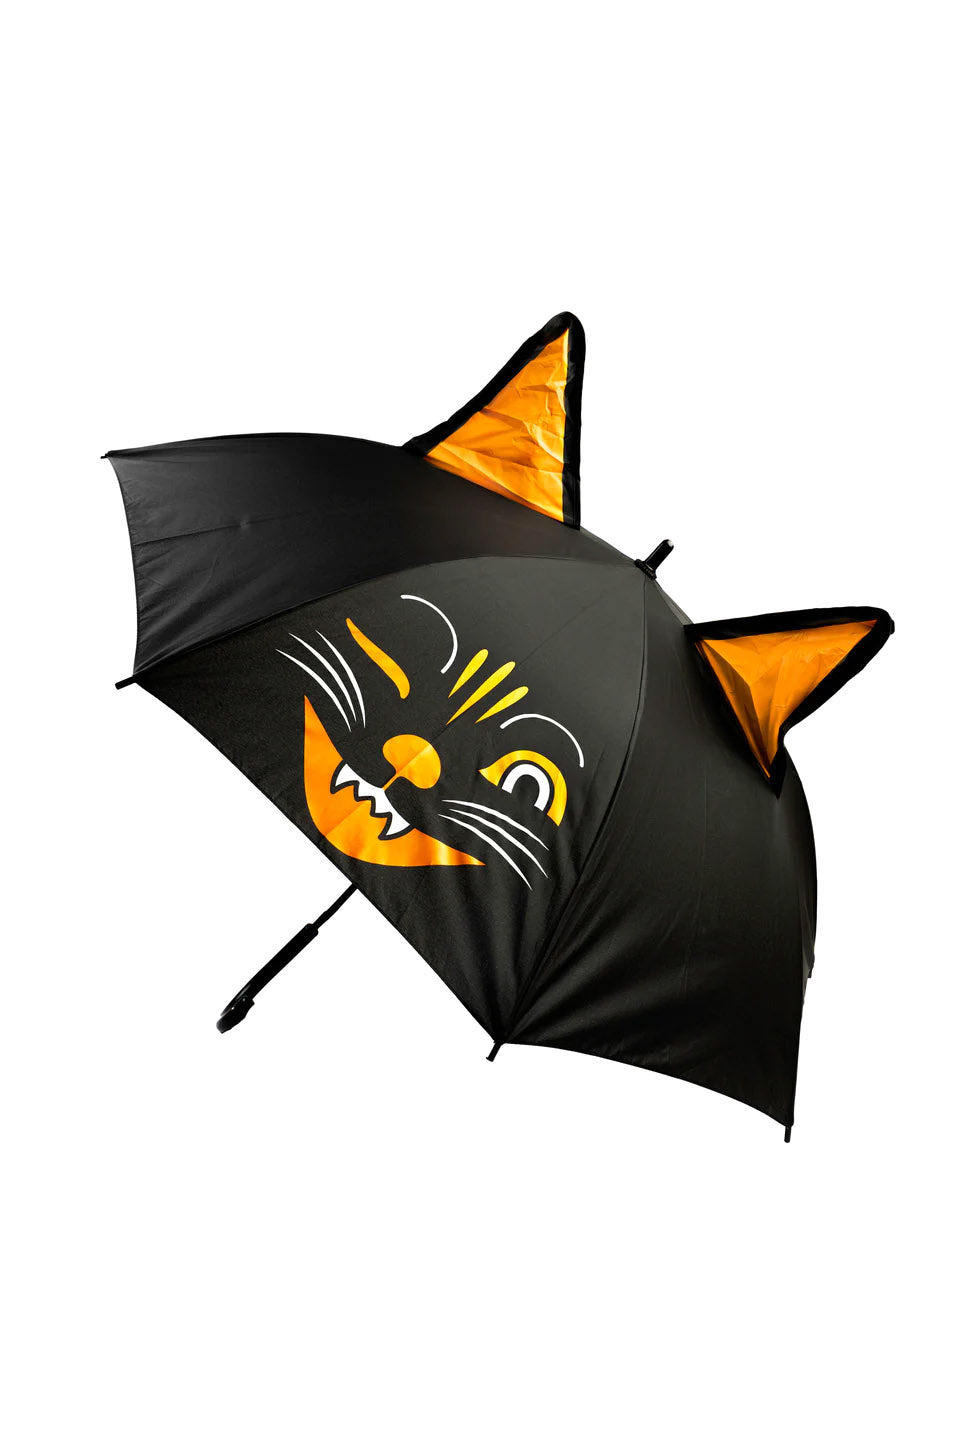 Jinx the Cat Umbrella